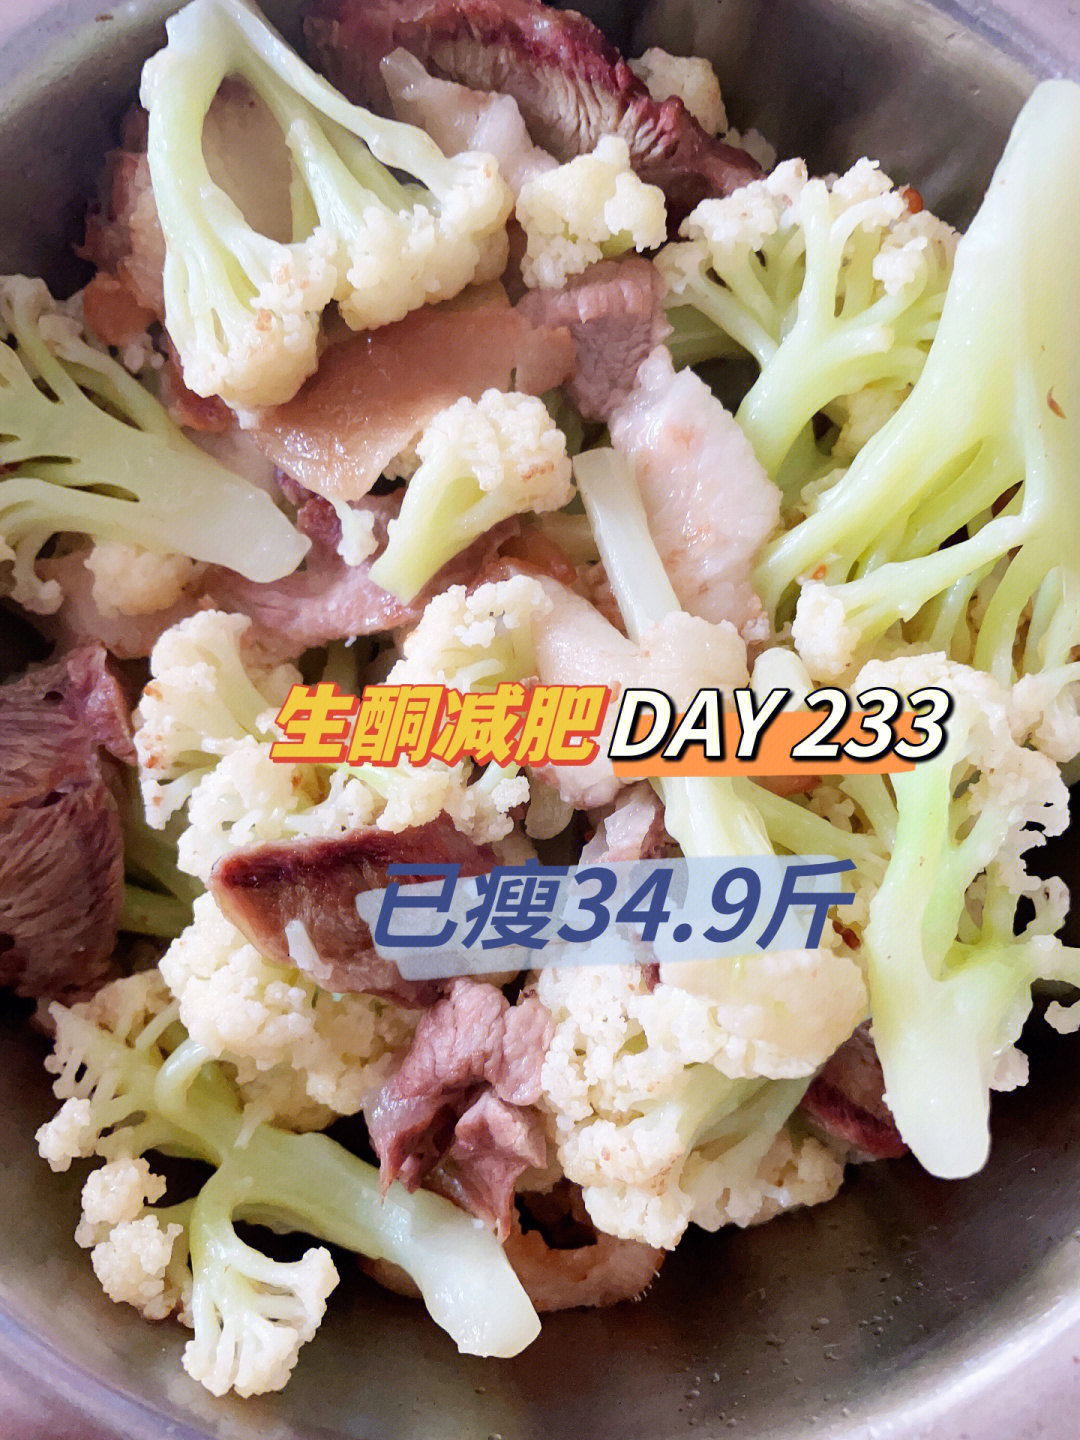 9815午餐(11:50):花菜炒肉,鱼香肉丝晚餐(17:20):臭豆腐,蒸蛋羹